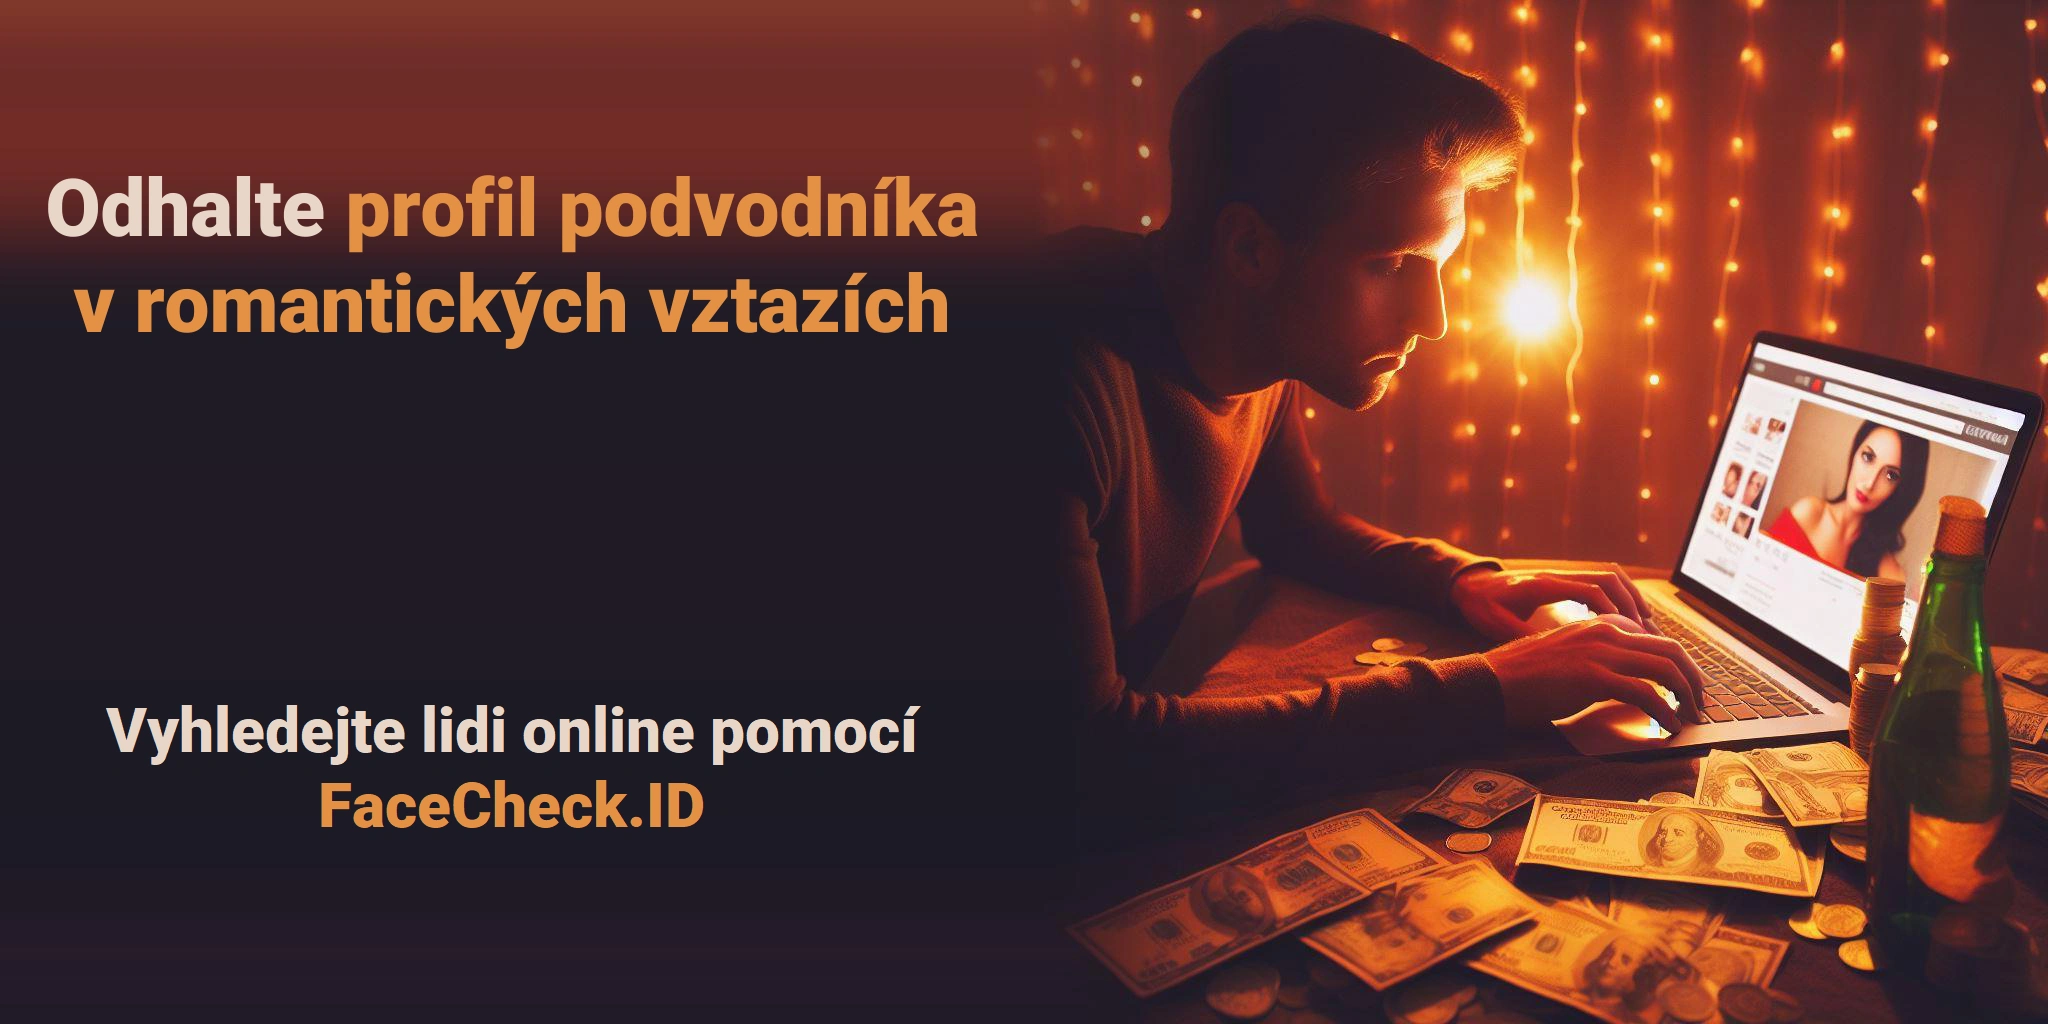 Odhalte profil podvodníka v romantických vztazích Vyhledejte lidi online pomocí FaceCheck.ID